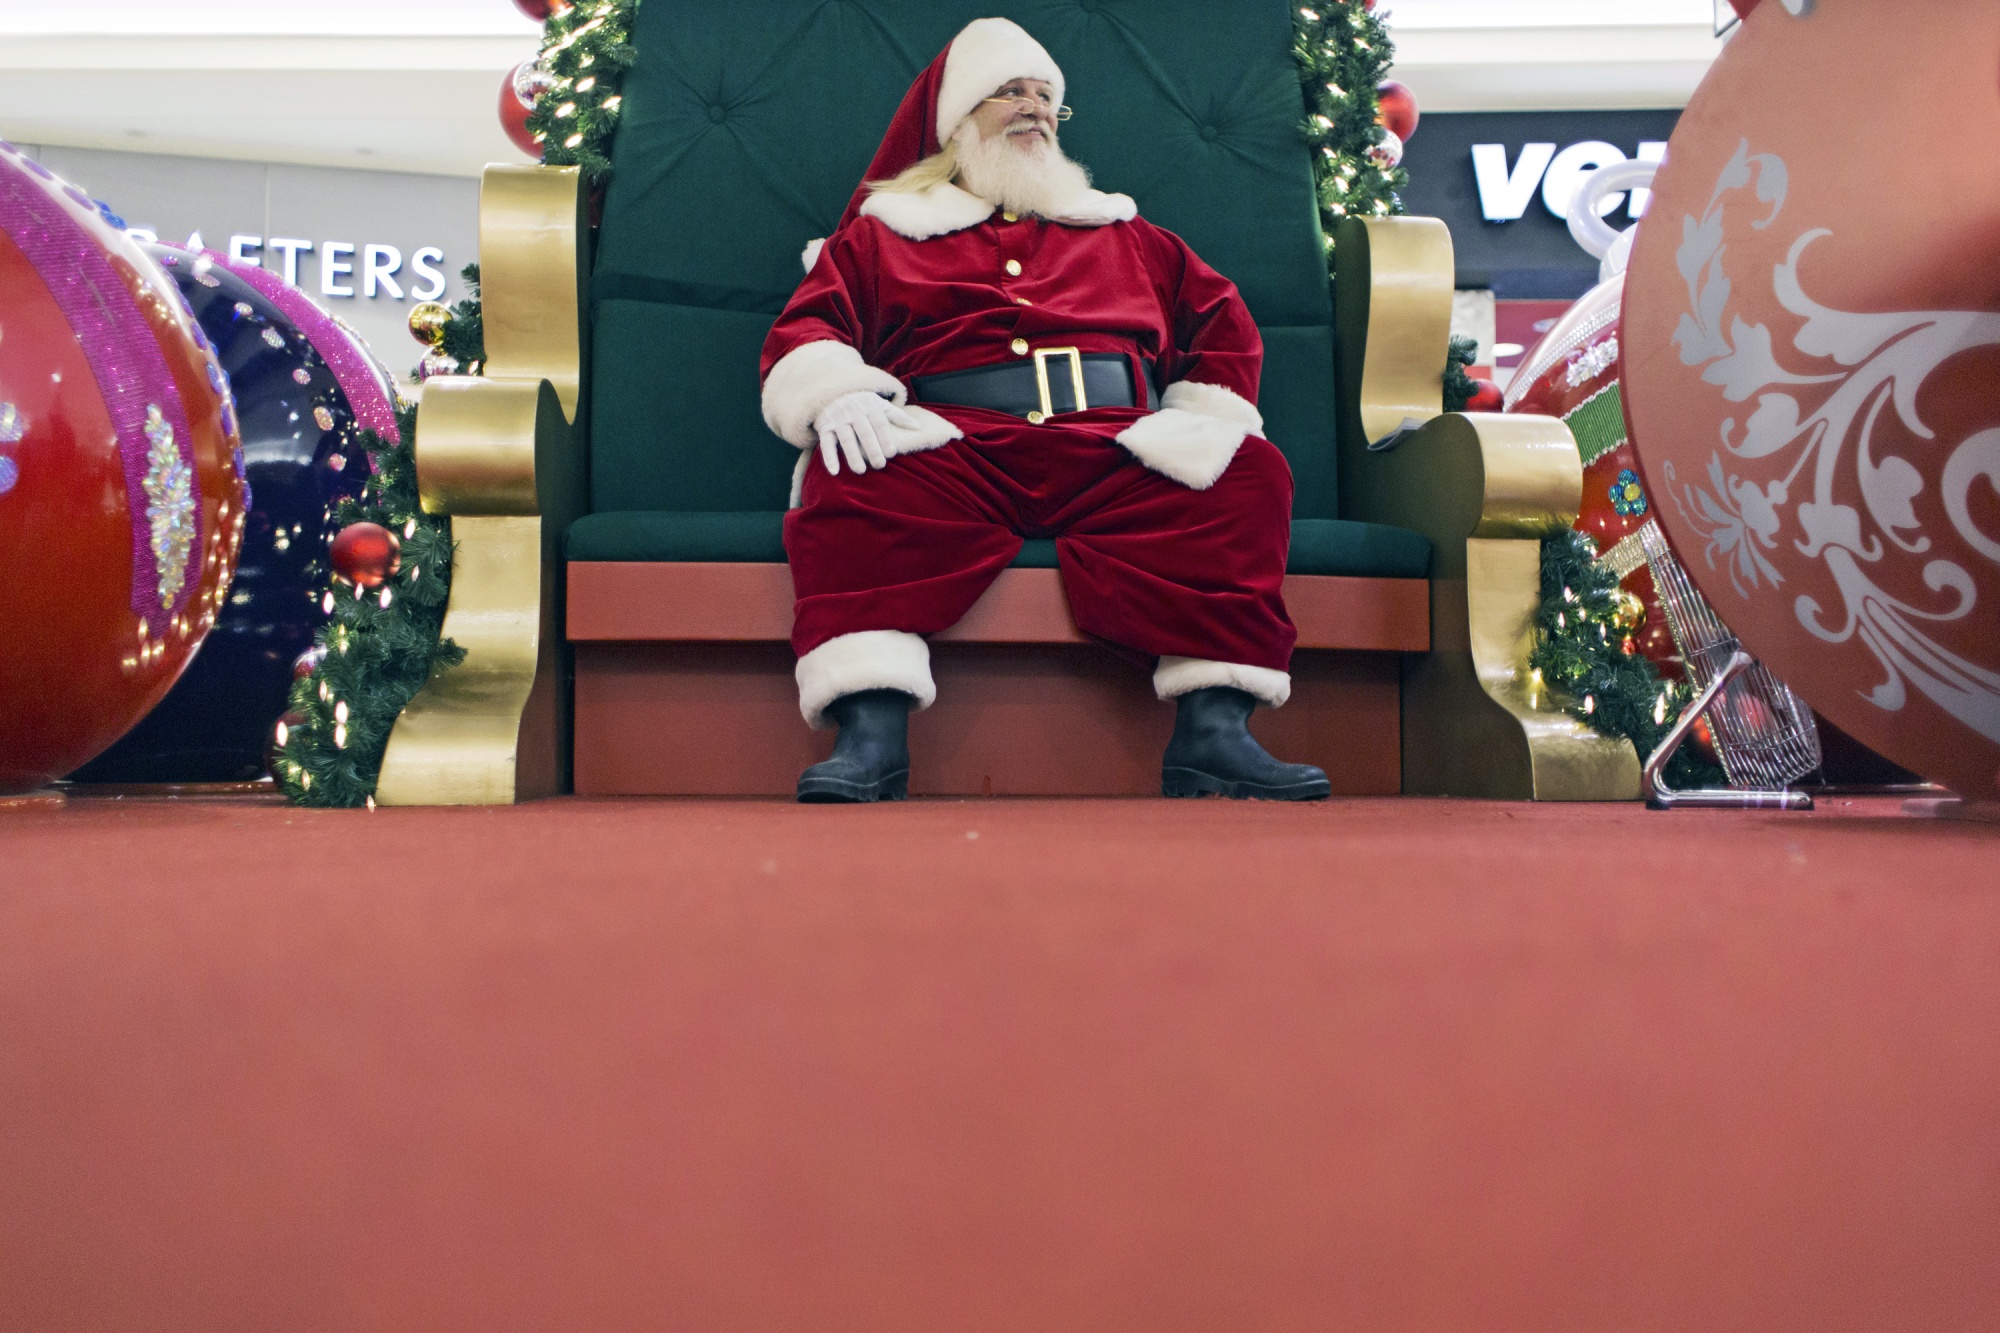 Santa Claus Experience at Park Meadows Mall begins November 10